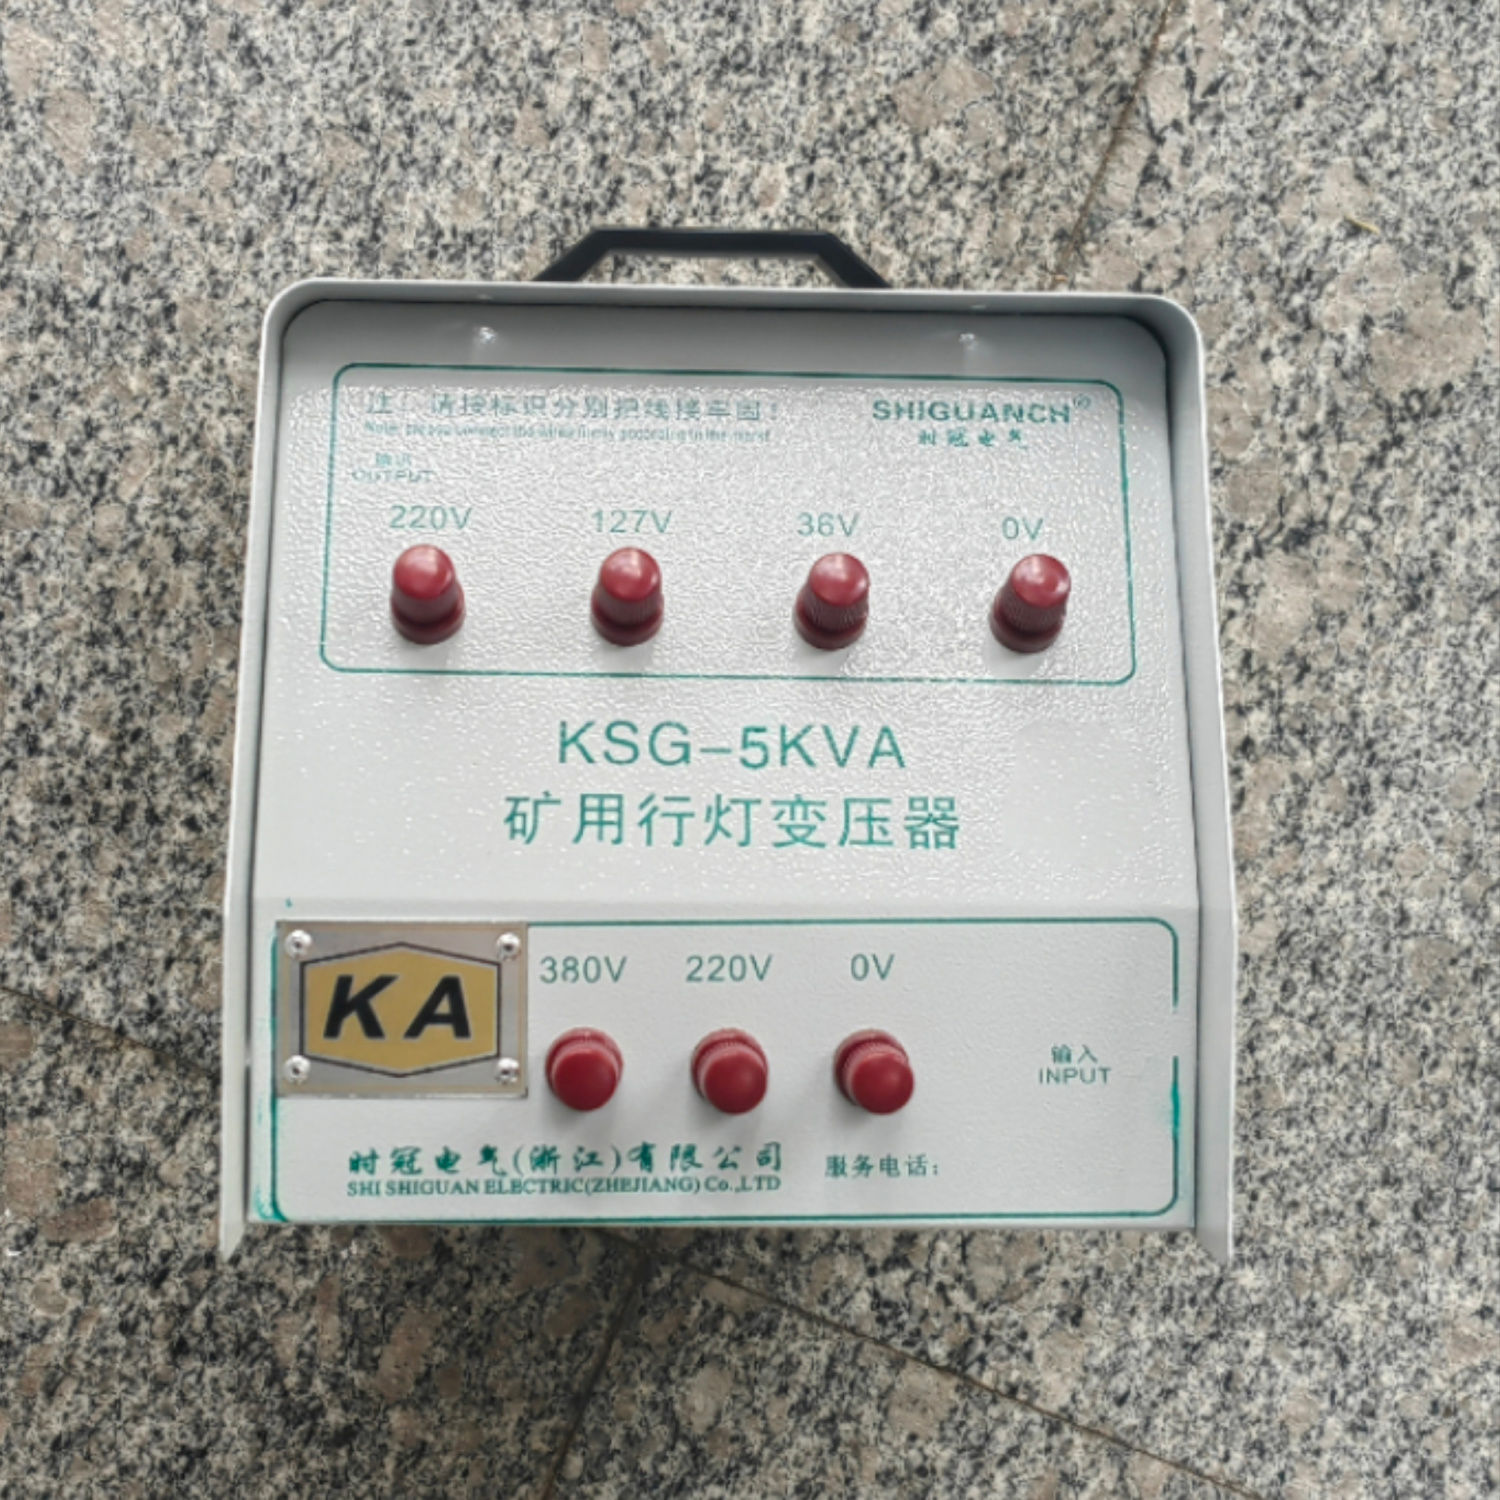 佛山KSG-5KVA矿用行灯变压器批发价-供应商-直销-报价-厂家电话-多少钱